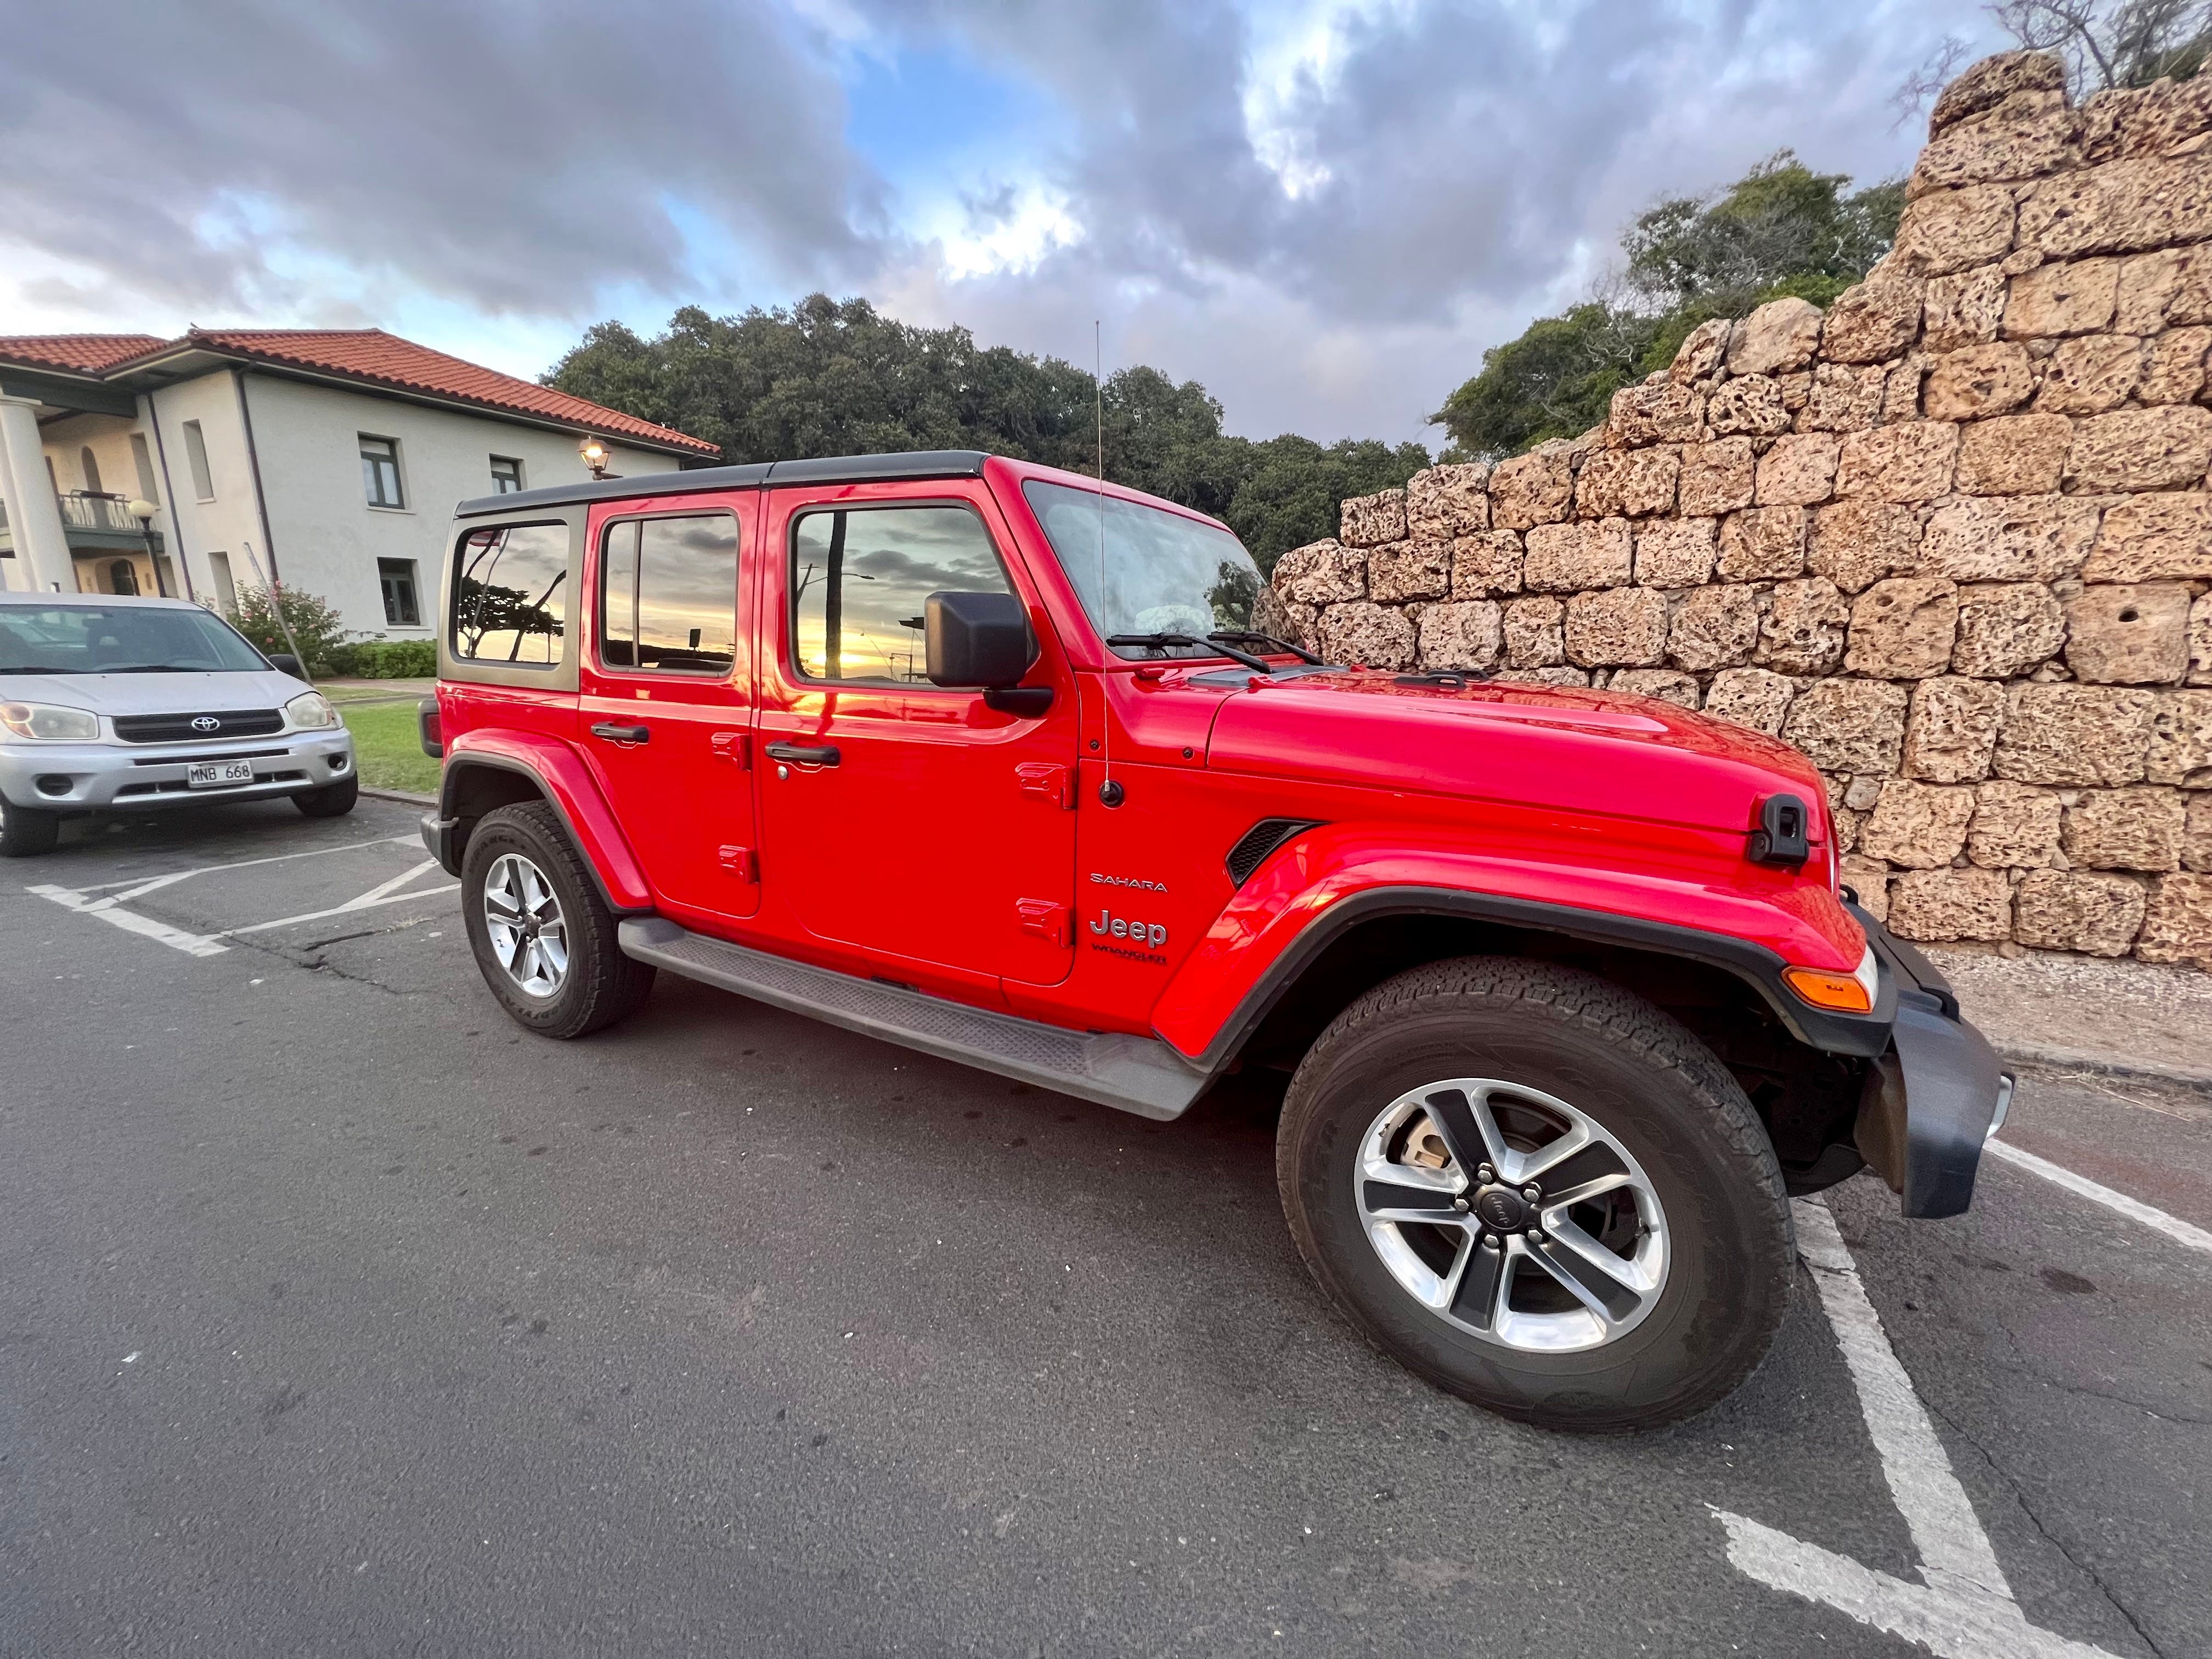 roter Jeep am Straßenrand in Hawaii geparkt